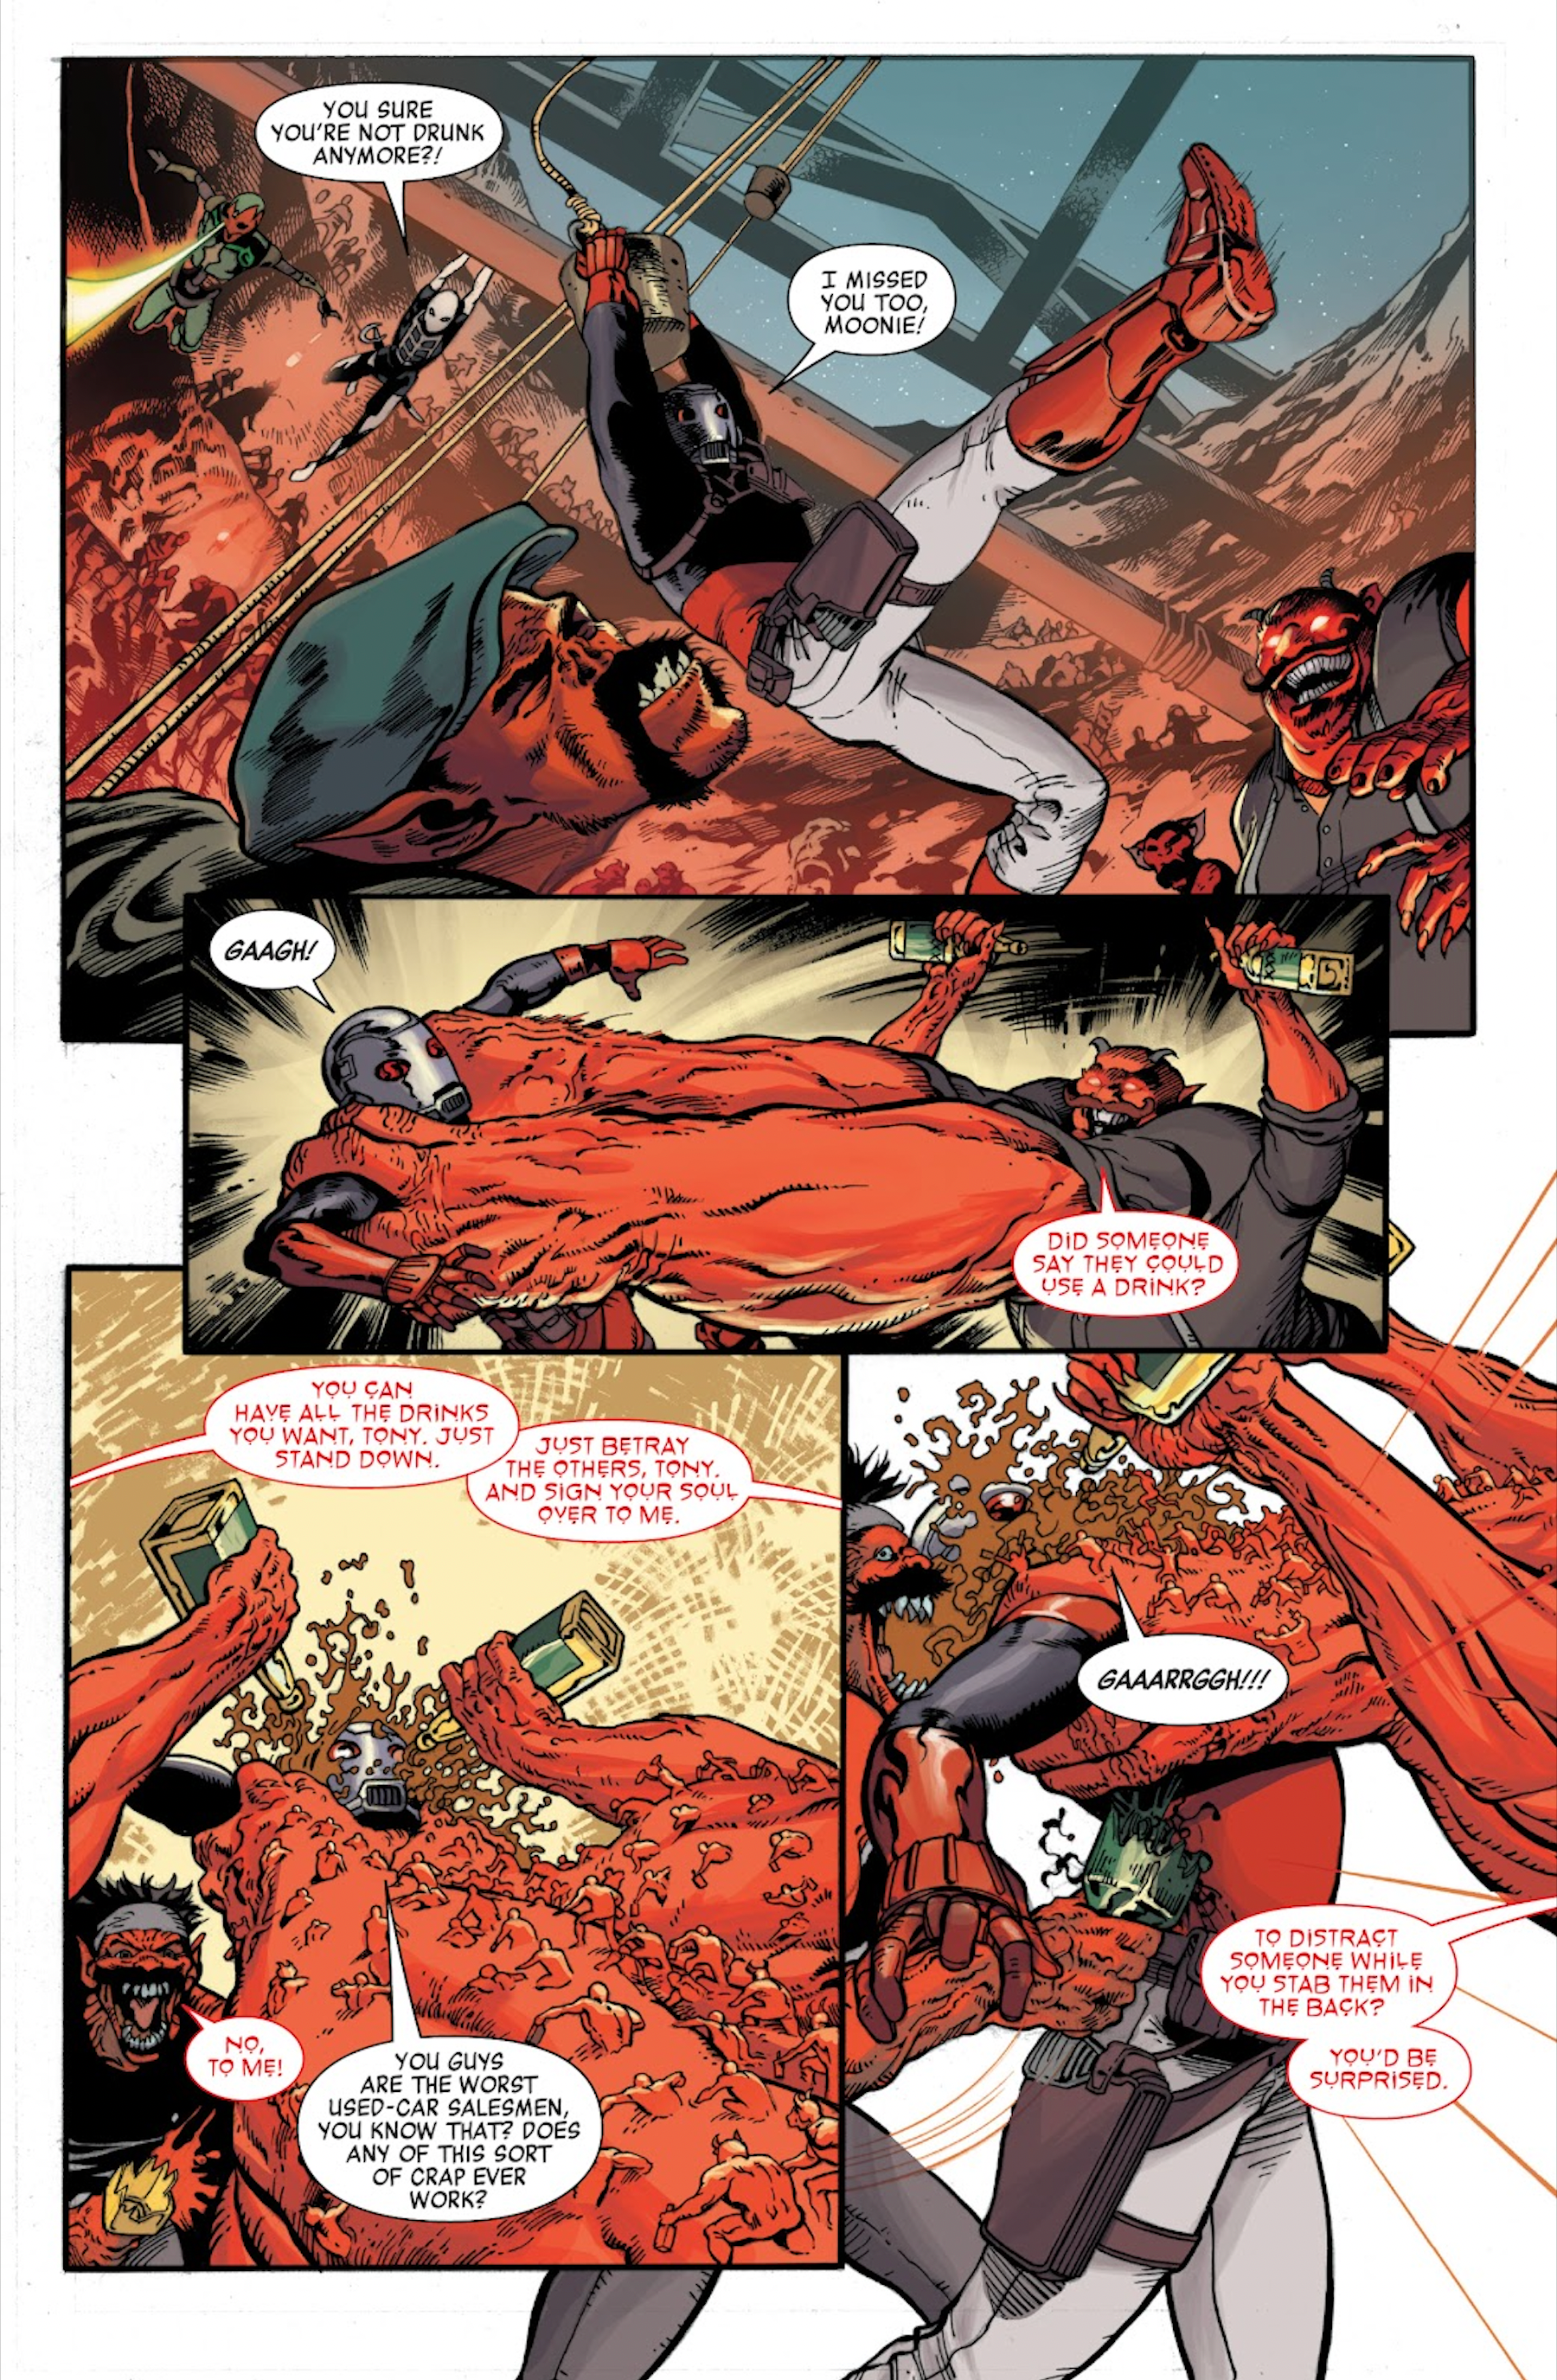 Mephisto stabs Iron Man